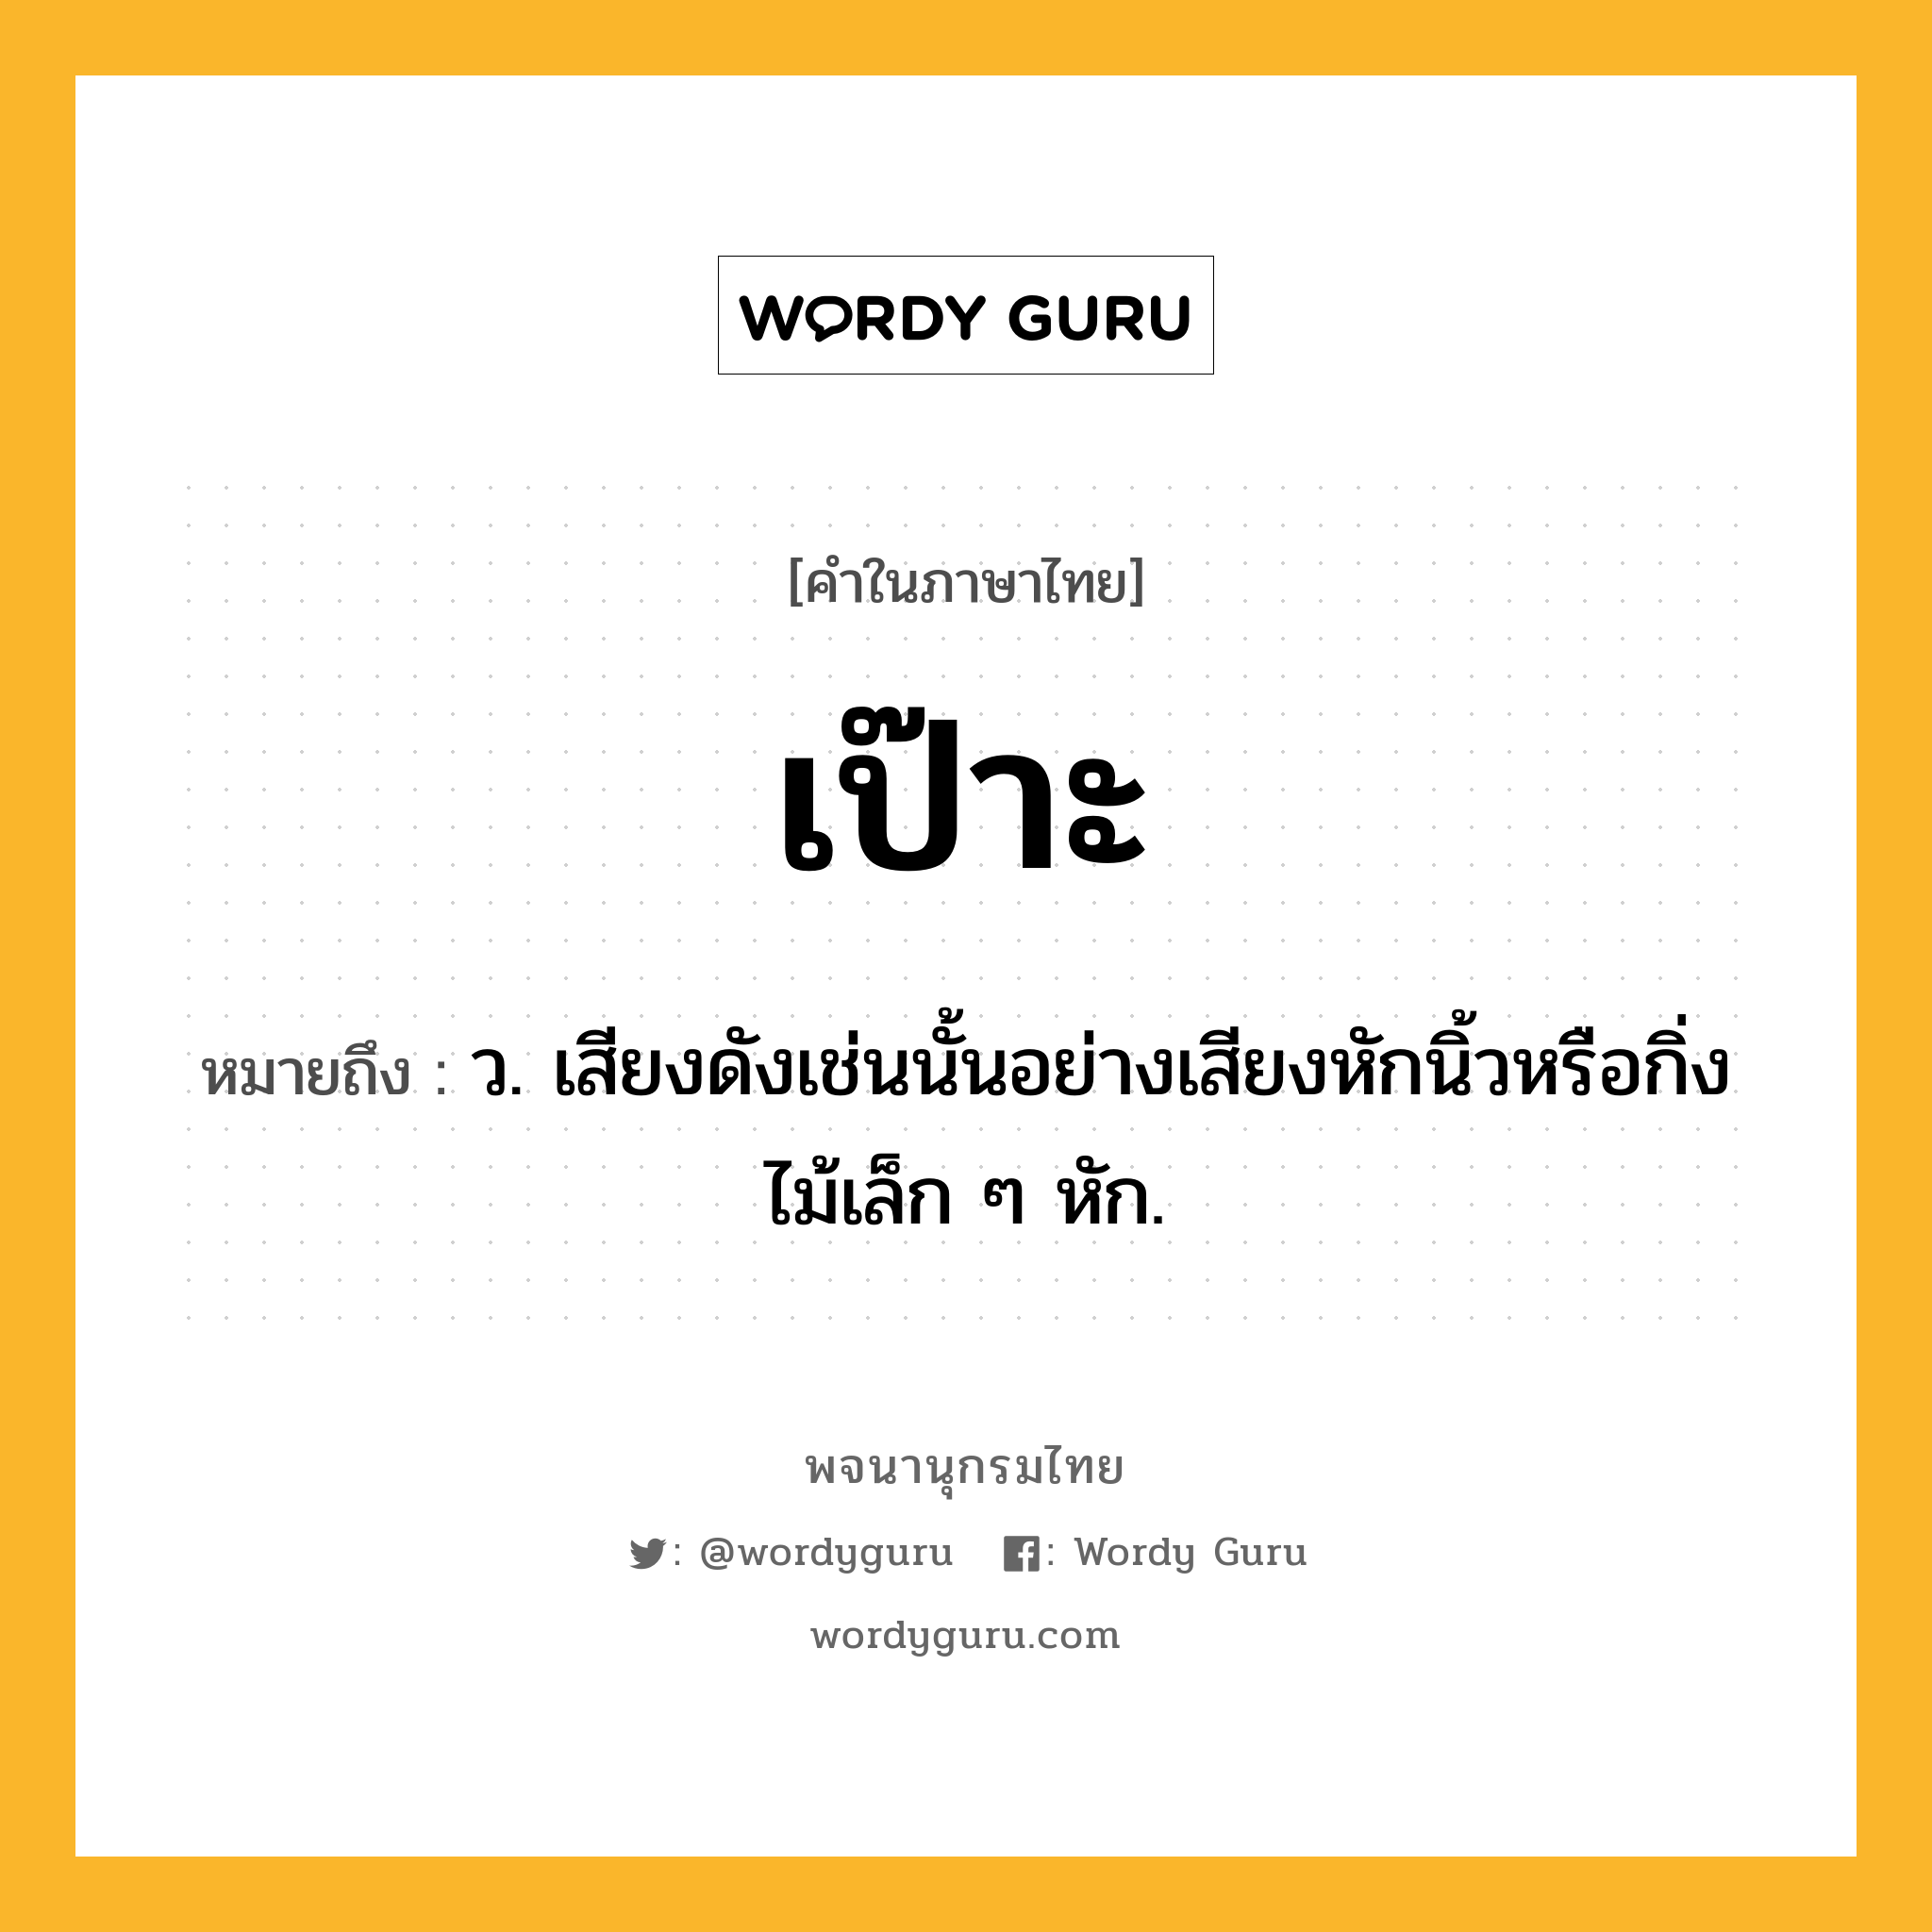 เป๊าะ ความหมาย หมายถึงอะไร?, คำในภาษาไทย เป๊าะ หมายถึง ว. เสียงดังเช่นนั้นอย่างเสียงหักนิ้วหรือกิ่งไม้เล็ก ๆ หัก.